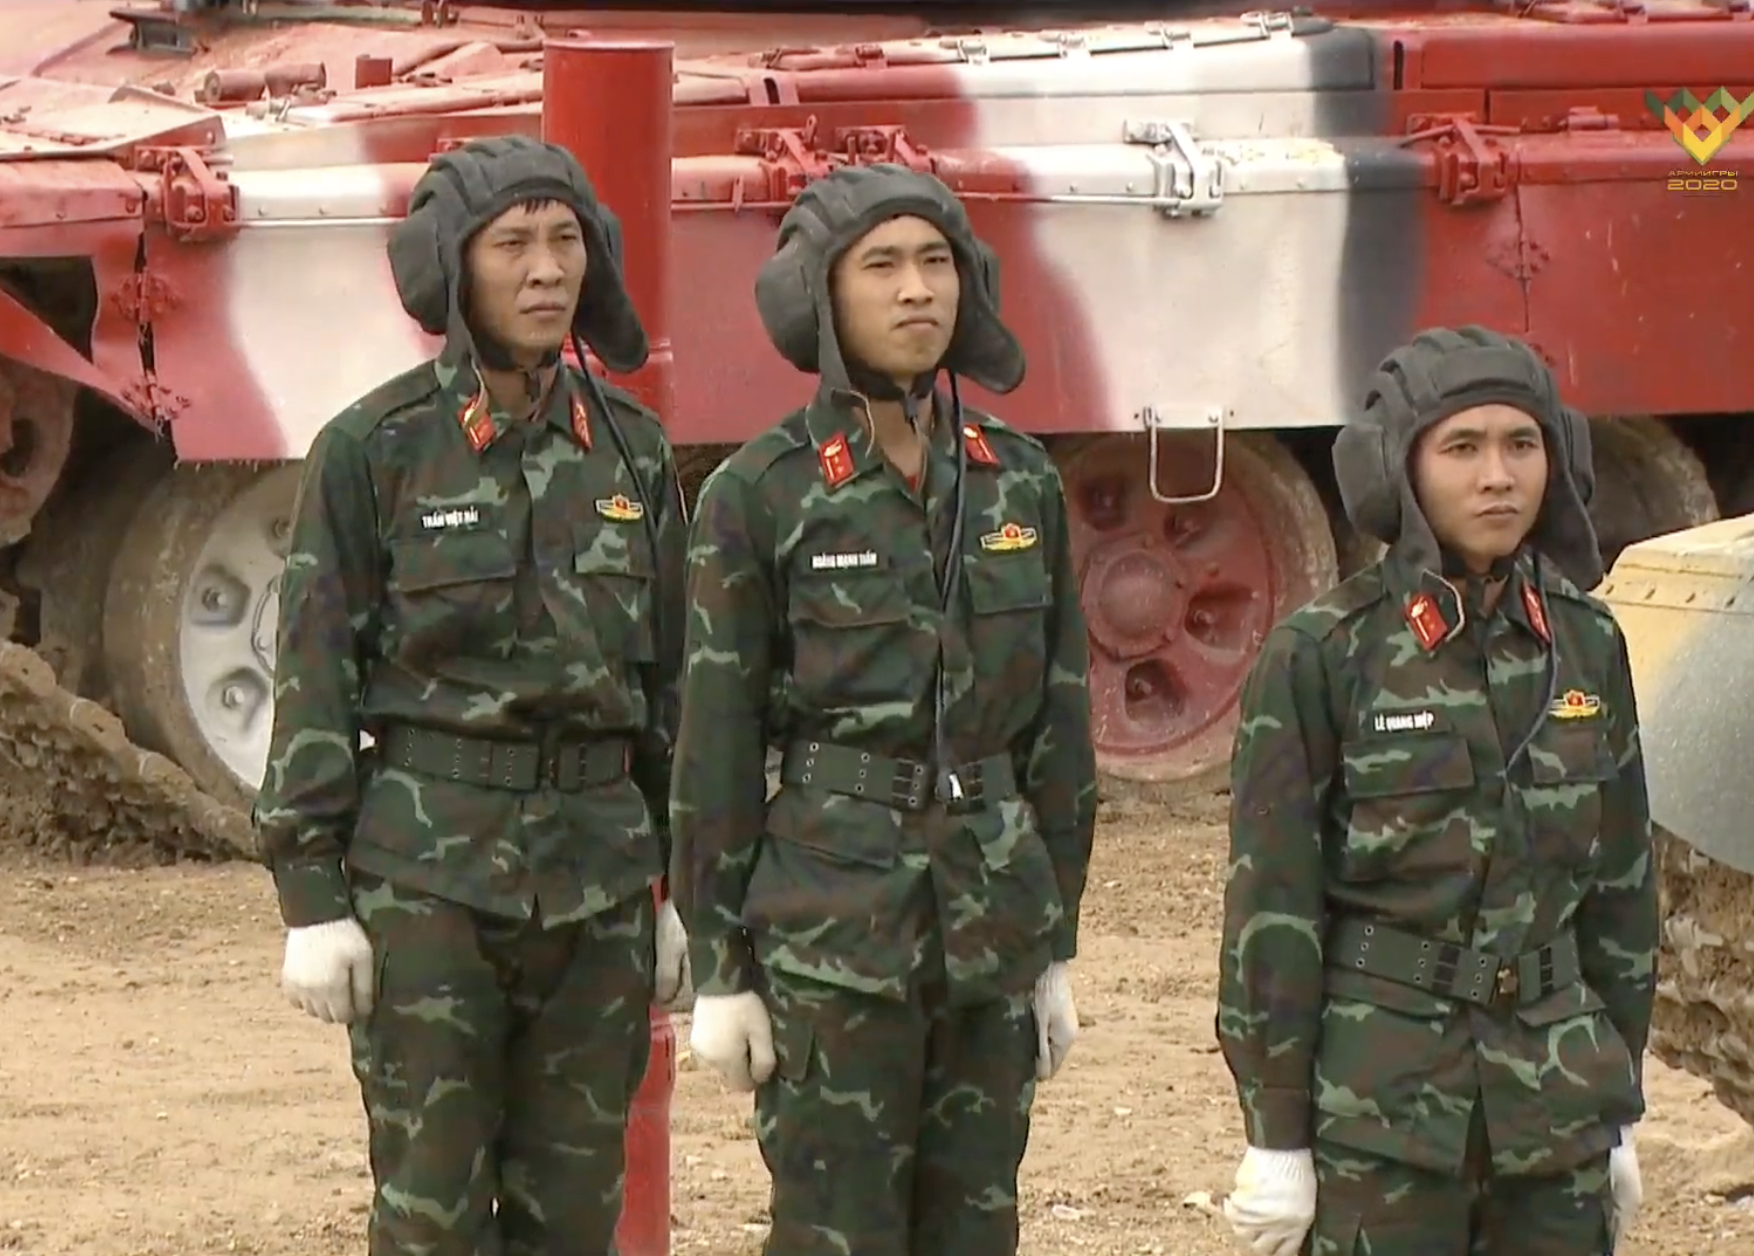 Army Games 2021 là sự kiện quân sự quan trọng được tổ chức hàng năm tại Nga. Đội tuyển xe tăng Việt Nam sẽ tham dự và biểu diễn tài năng của mình tại đây. Bạn không thể bỏ lỡ hình ảnh đội tuyển xe tăng Việt Nam tham gia Army Games 2021 và chiếc xe tăng Việt Nam mang màu sắc quốc gia đầy hào hùng.